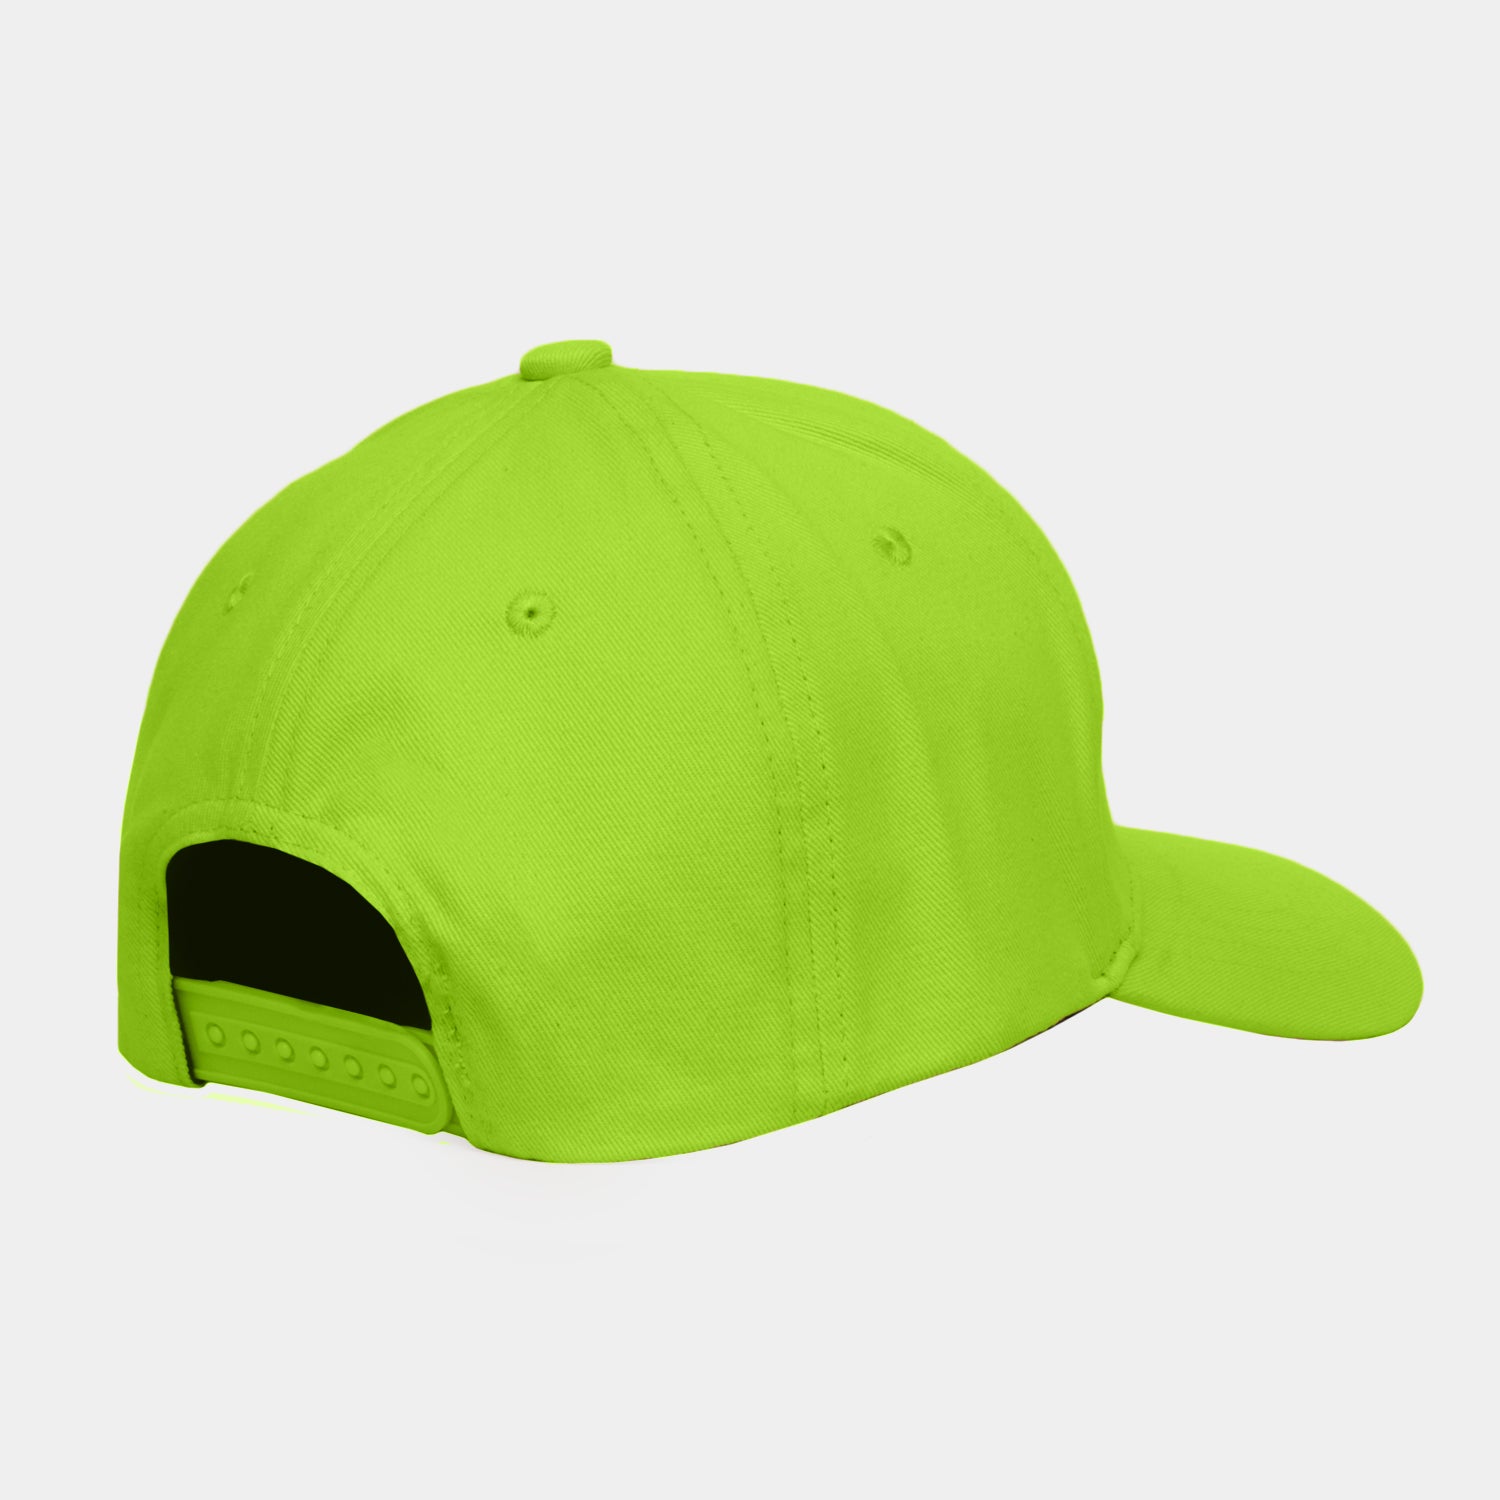 OG Thunder Baseball Cap Neon Green